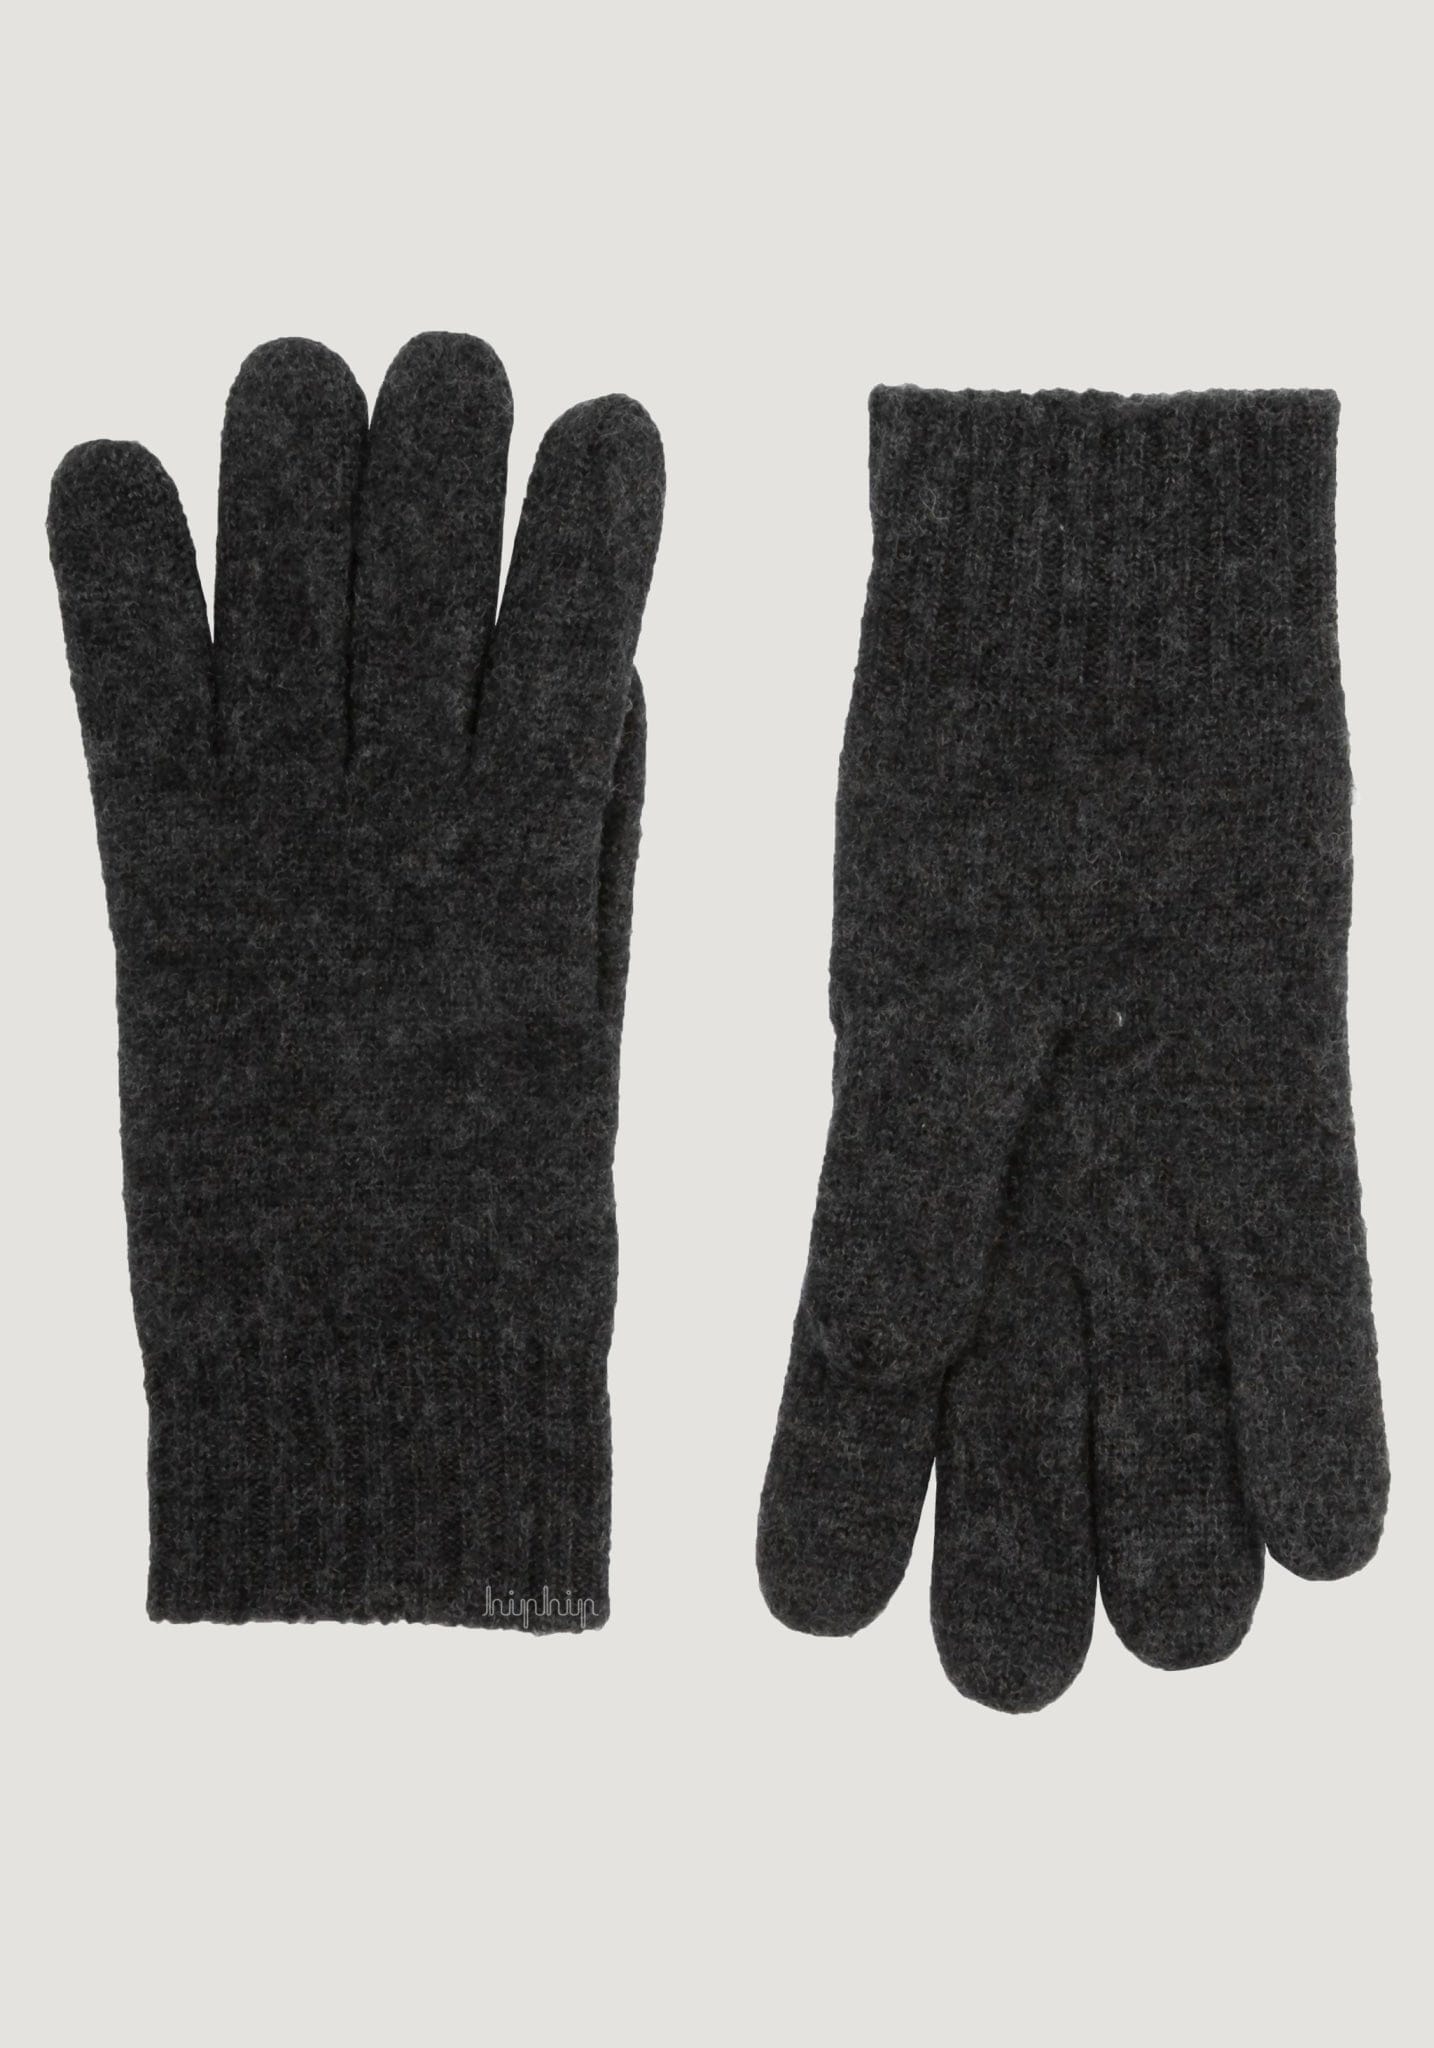 Mănuși bărbați din lână fiartă- Grey Melange Joha Man HipHip.ro